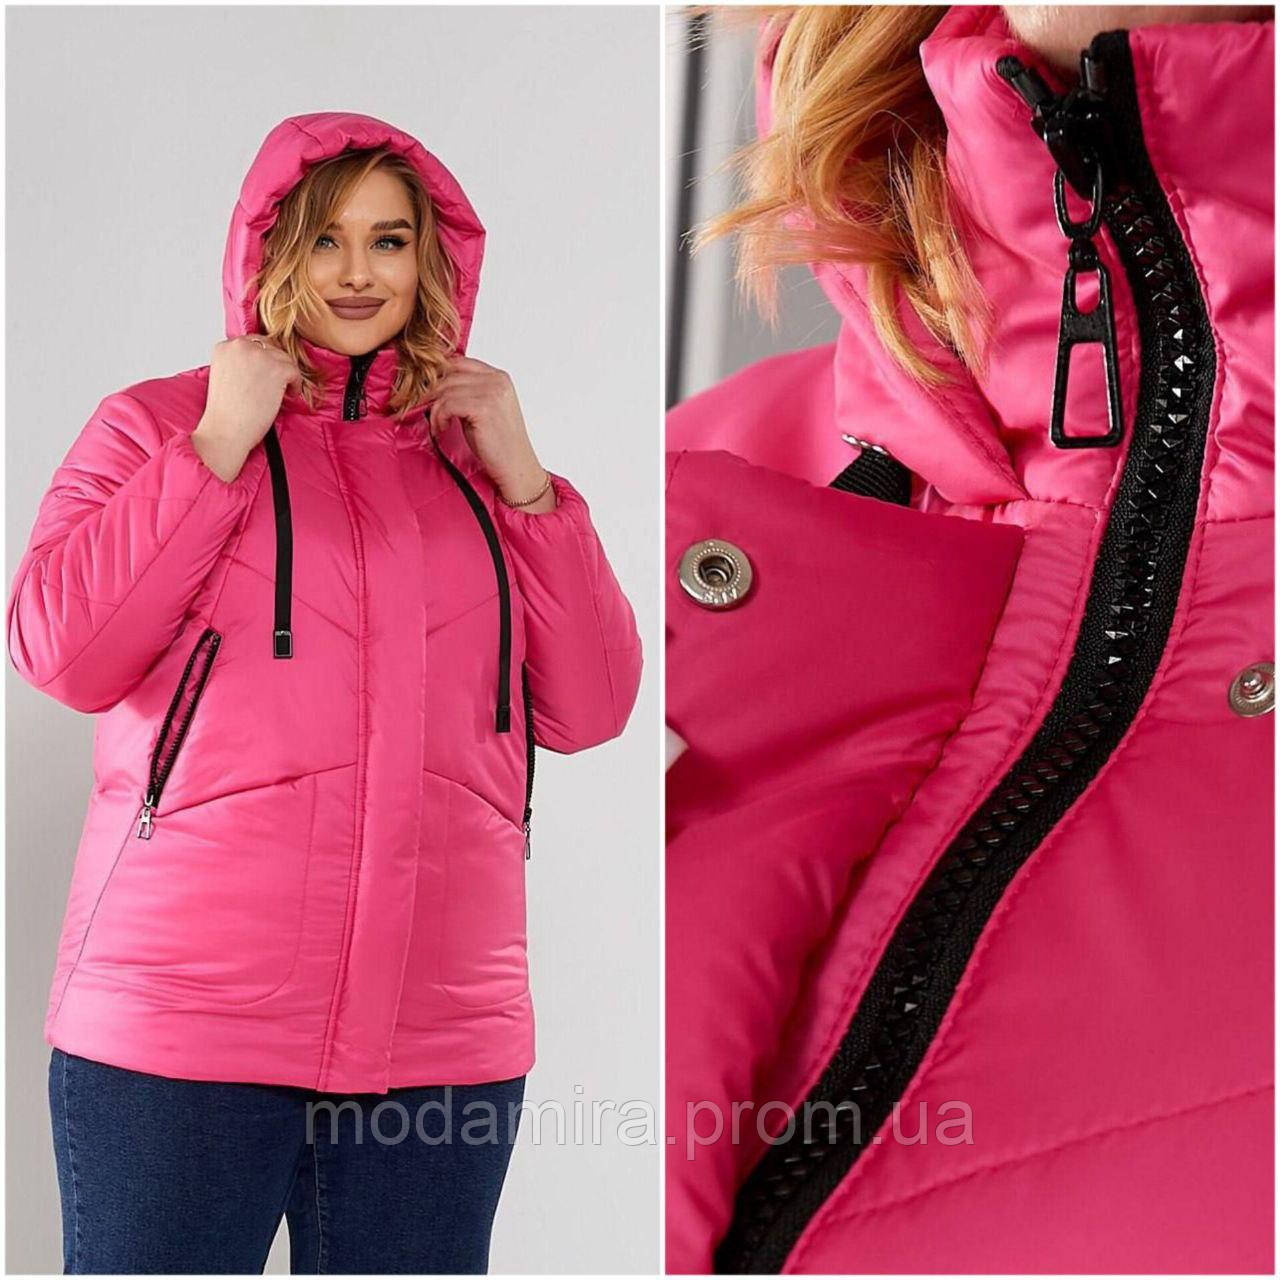 Жіноча весняна куртка великого розміру р- 52,54,56,58,60,62,64,66,68,70 рожева, чорна